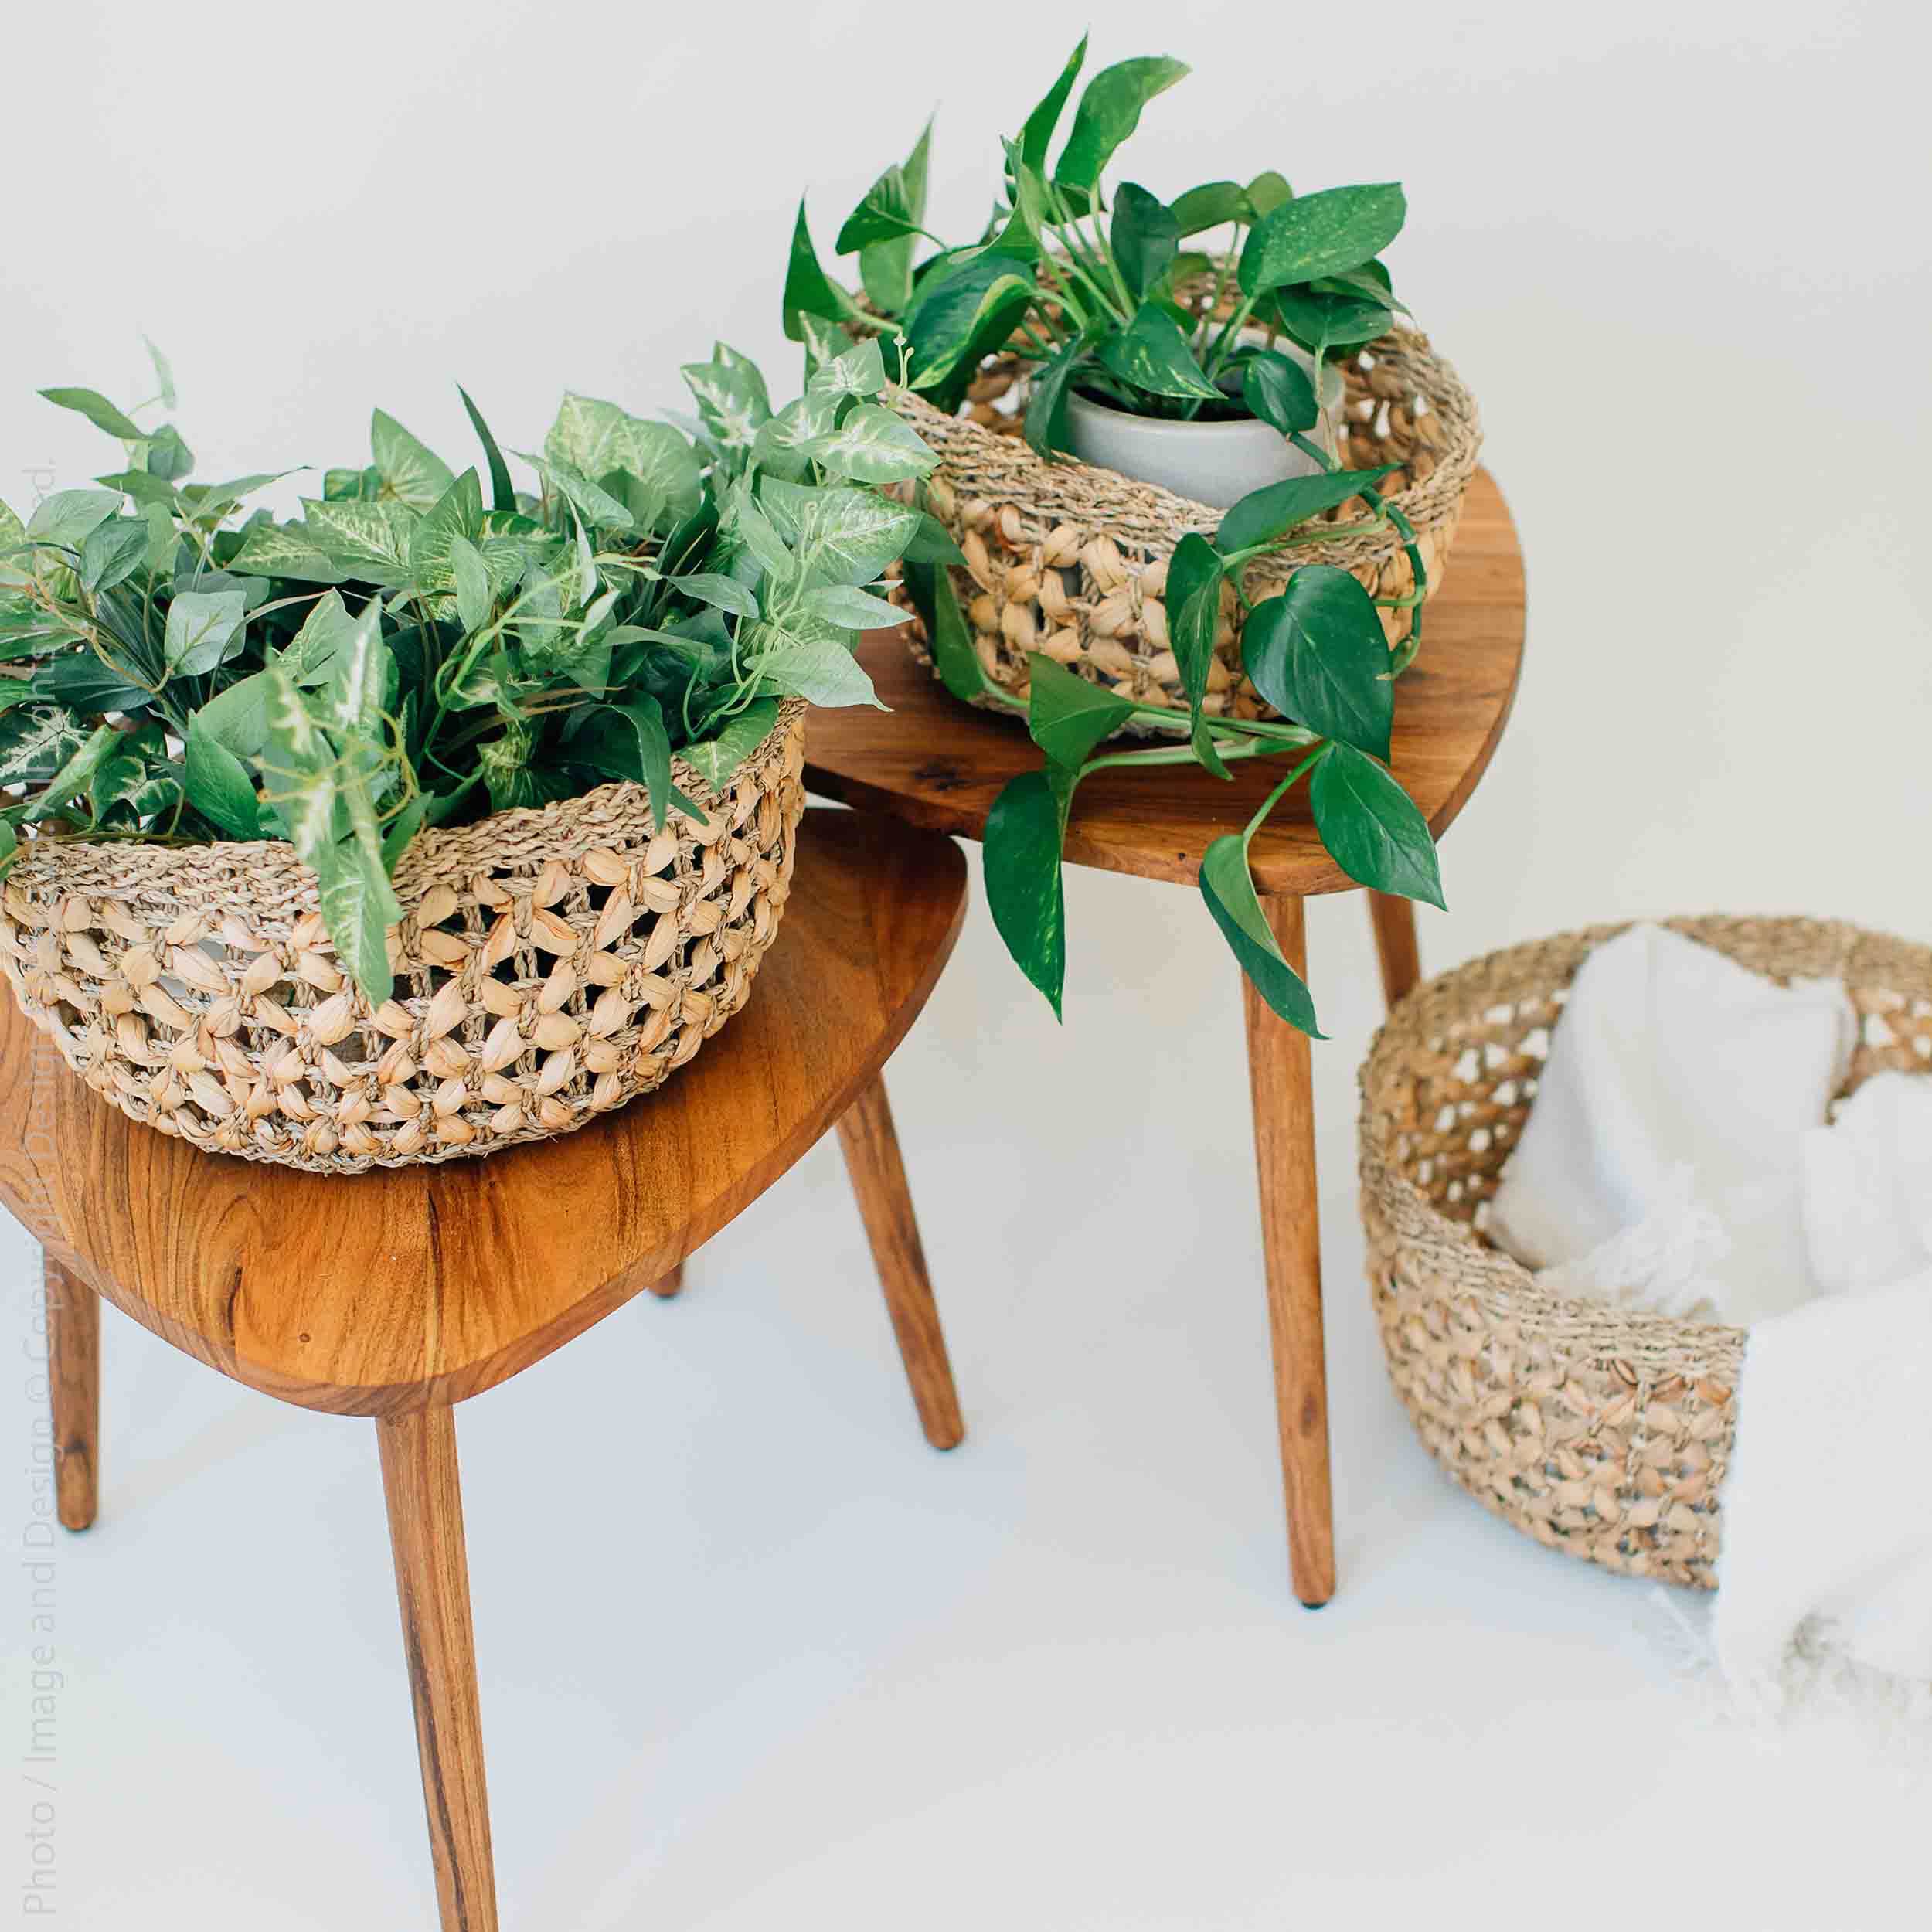 Fasano™ Woven Water Hyacinth Baskets (set of 3)